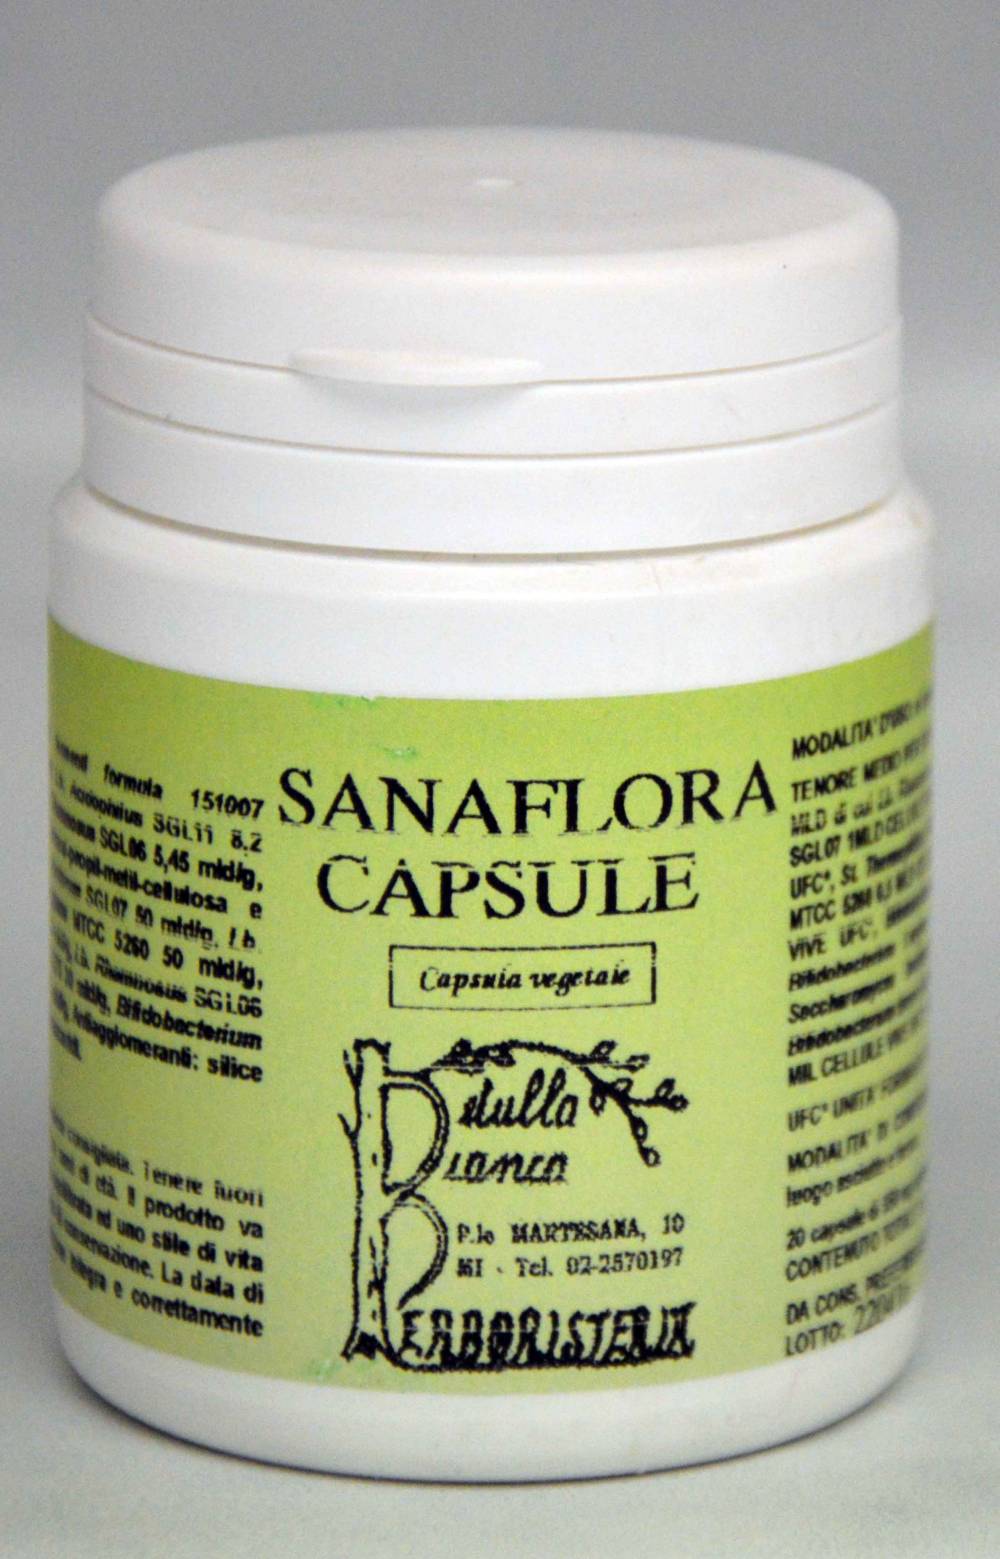 Sanaflora capsule